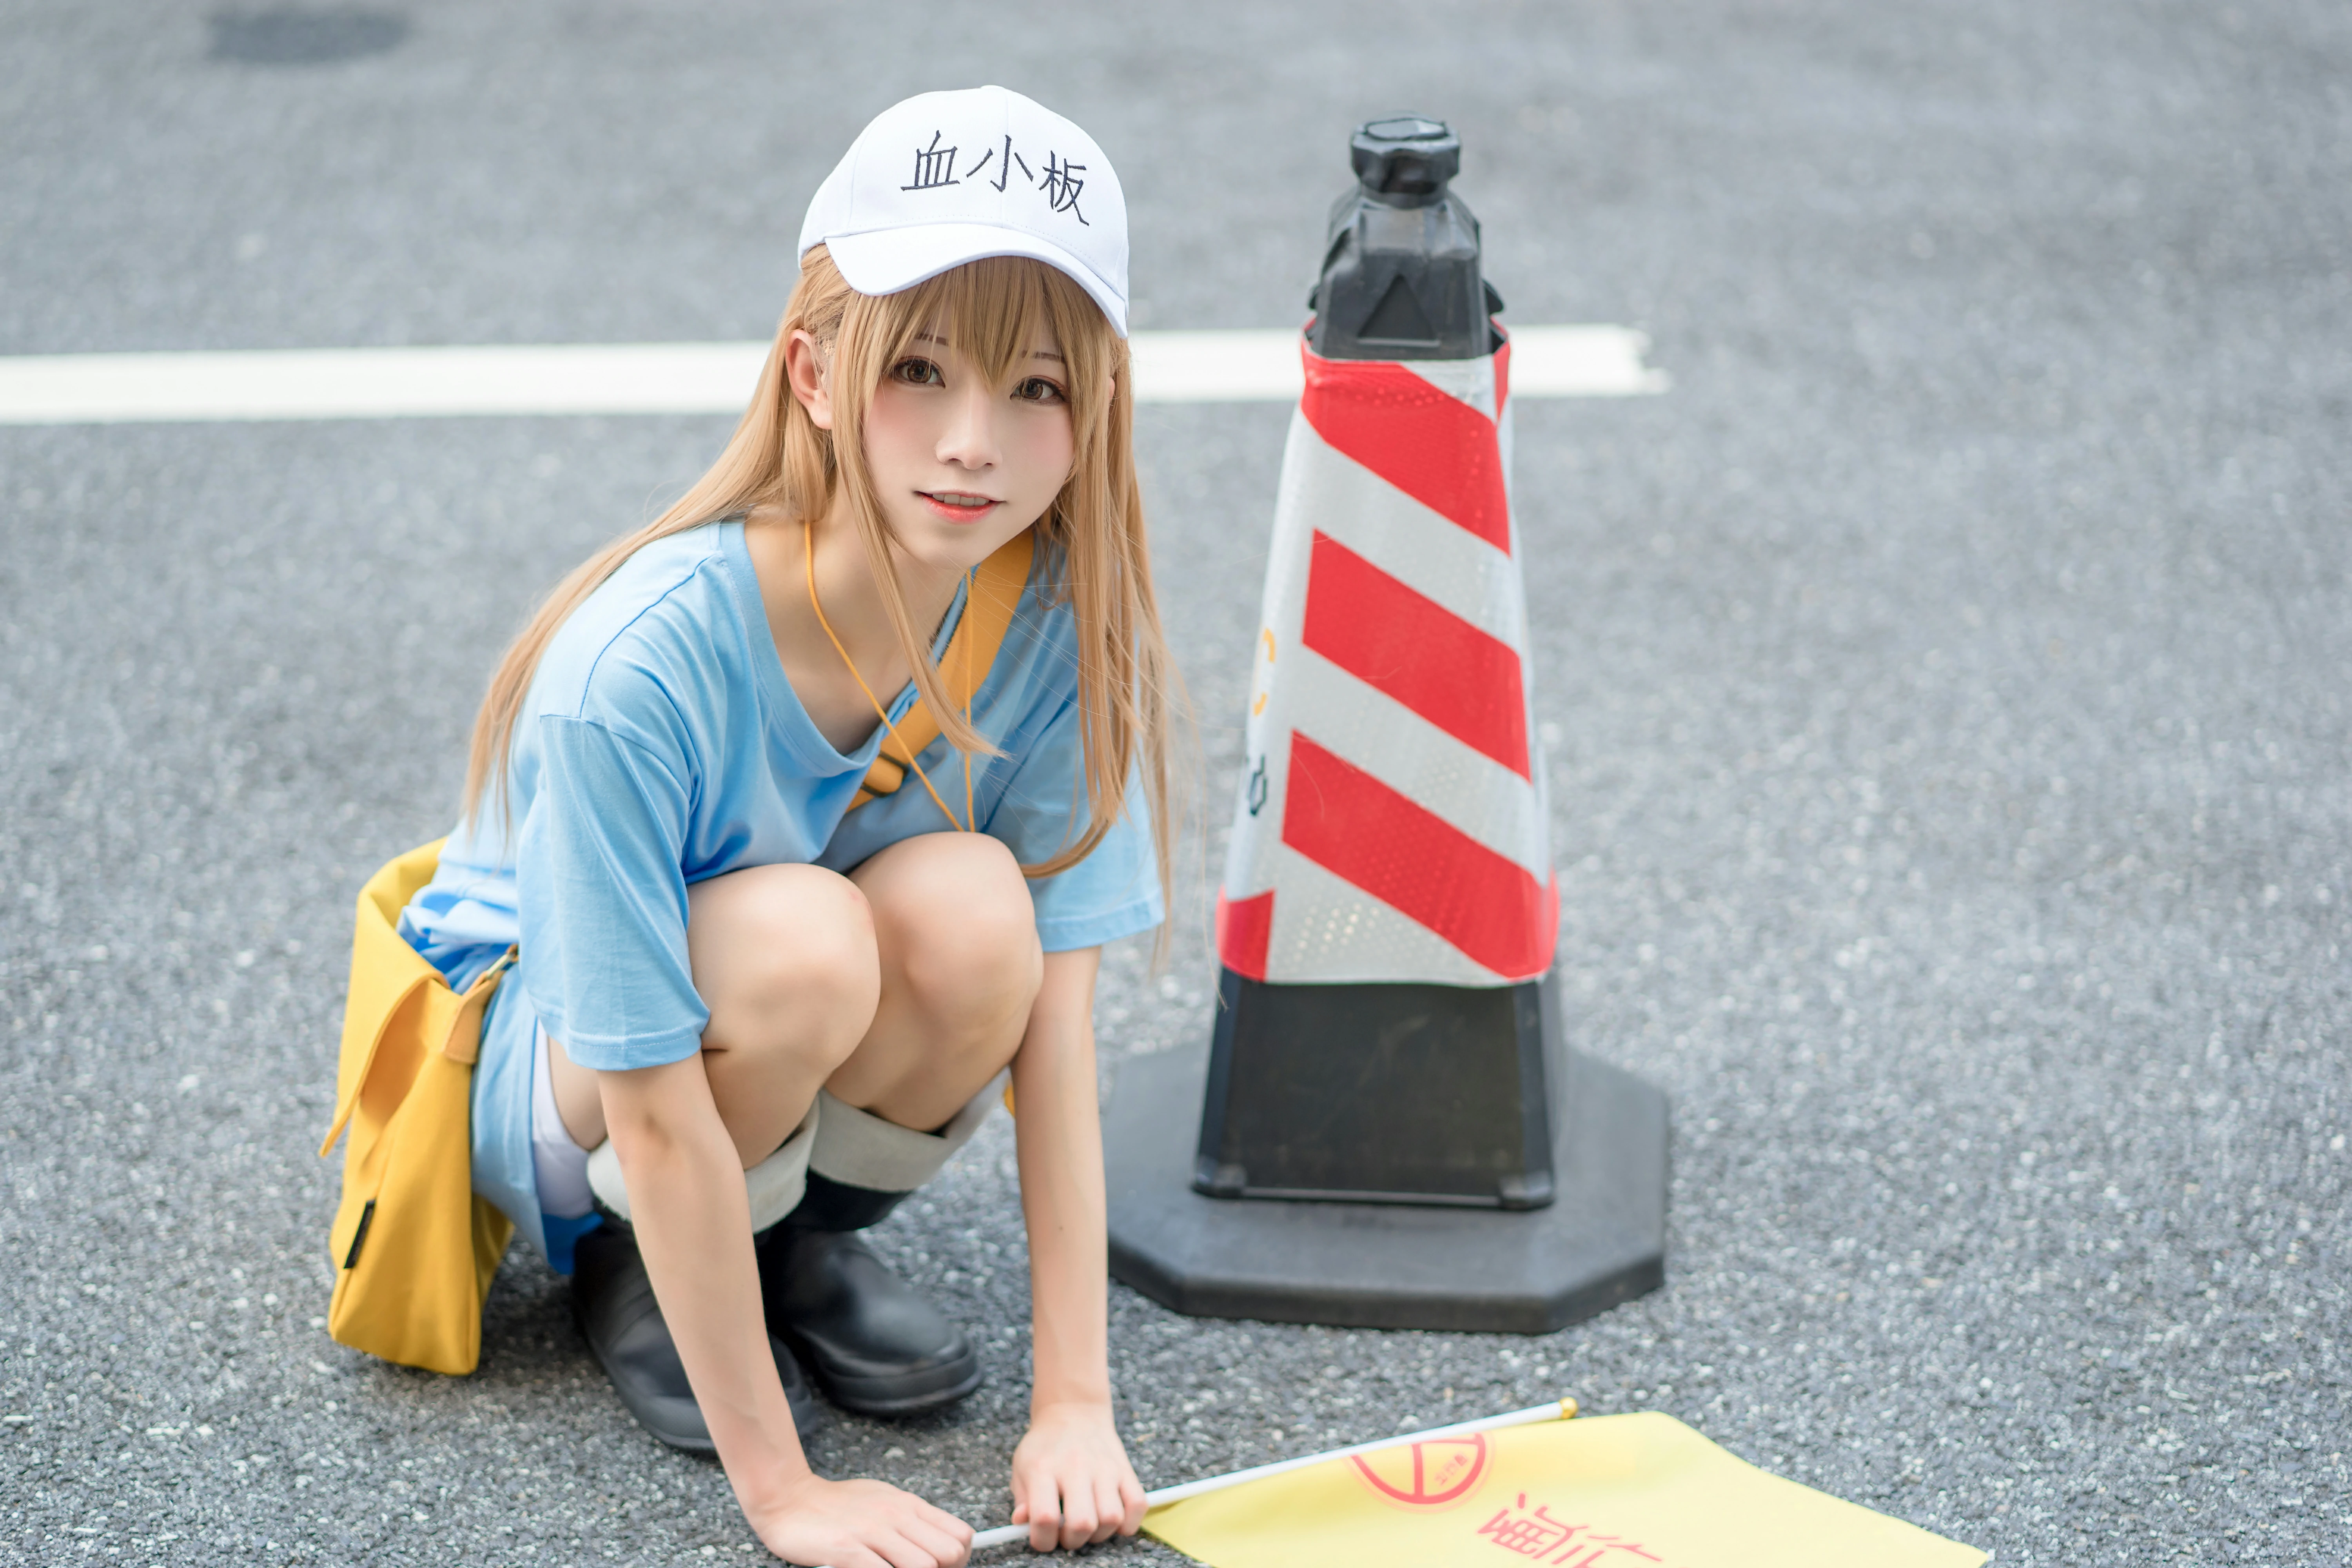 清纯少女快递员 绮太郎Kitaro 血小板 蓝色连身短袖街拍写真,1186